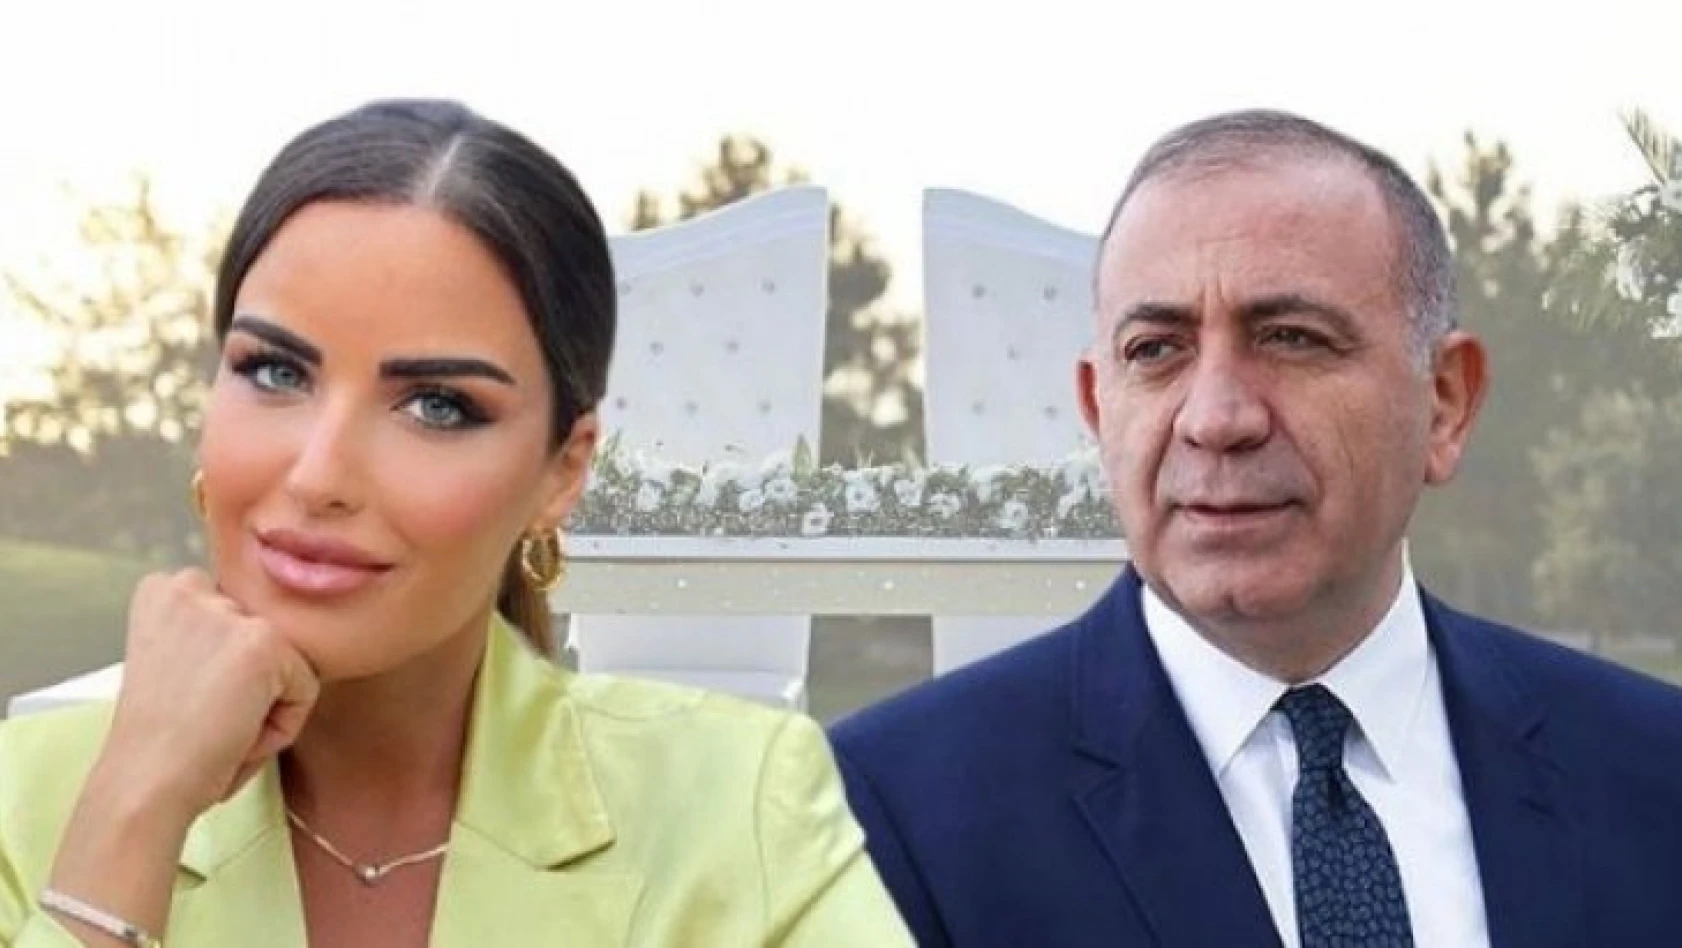 Haber spikeri Mehtap Özkan ile CHP'li Gürsel Tekin evlendi